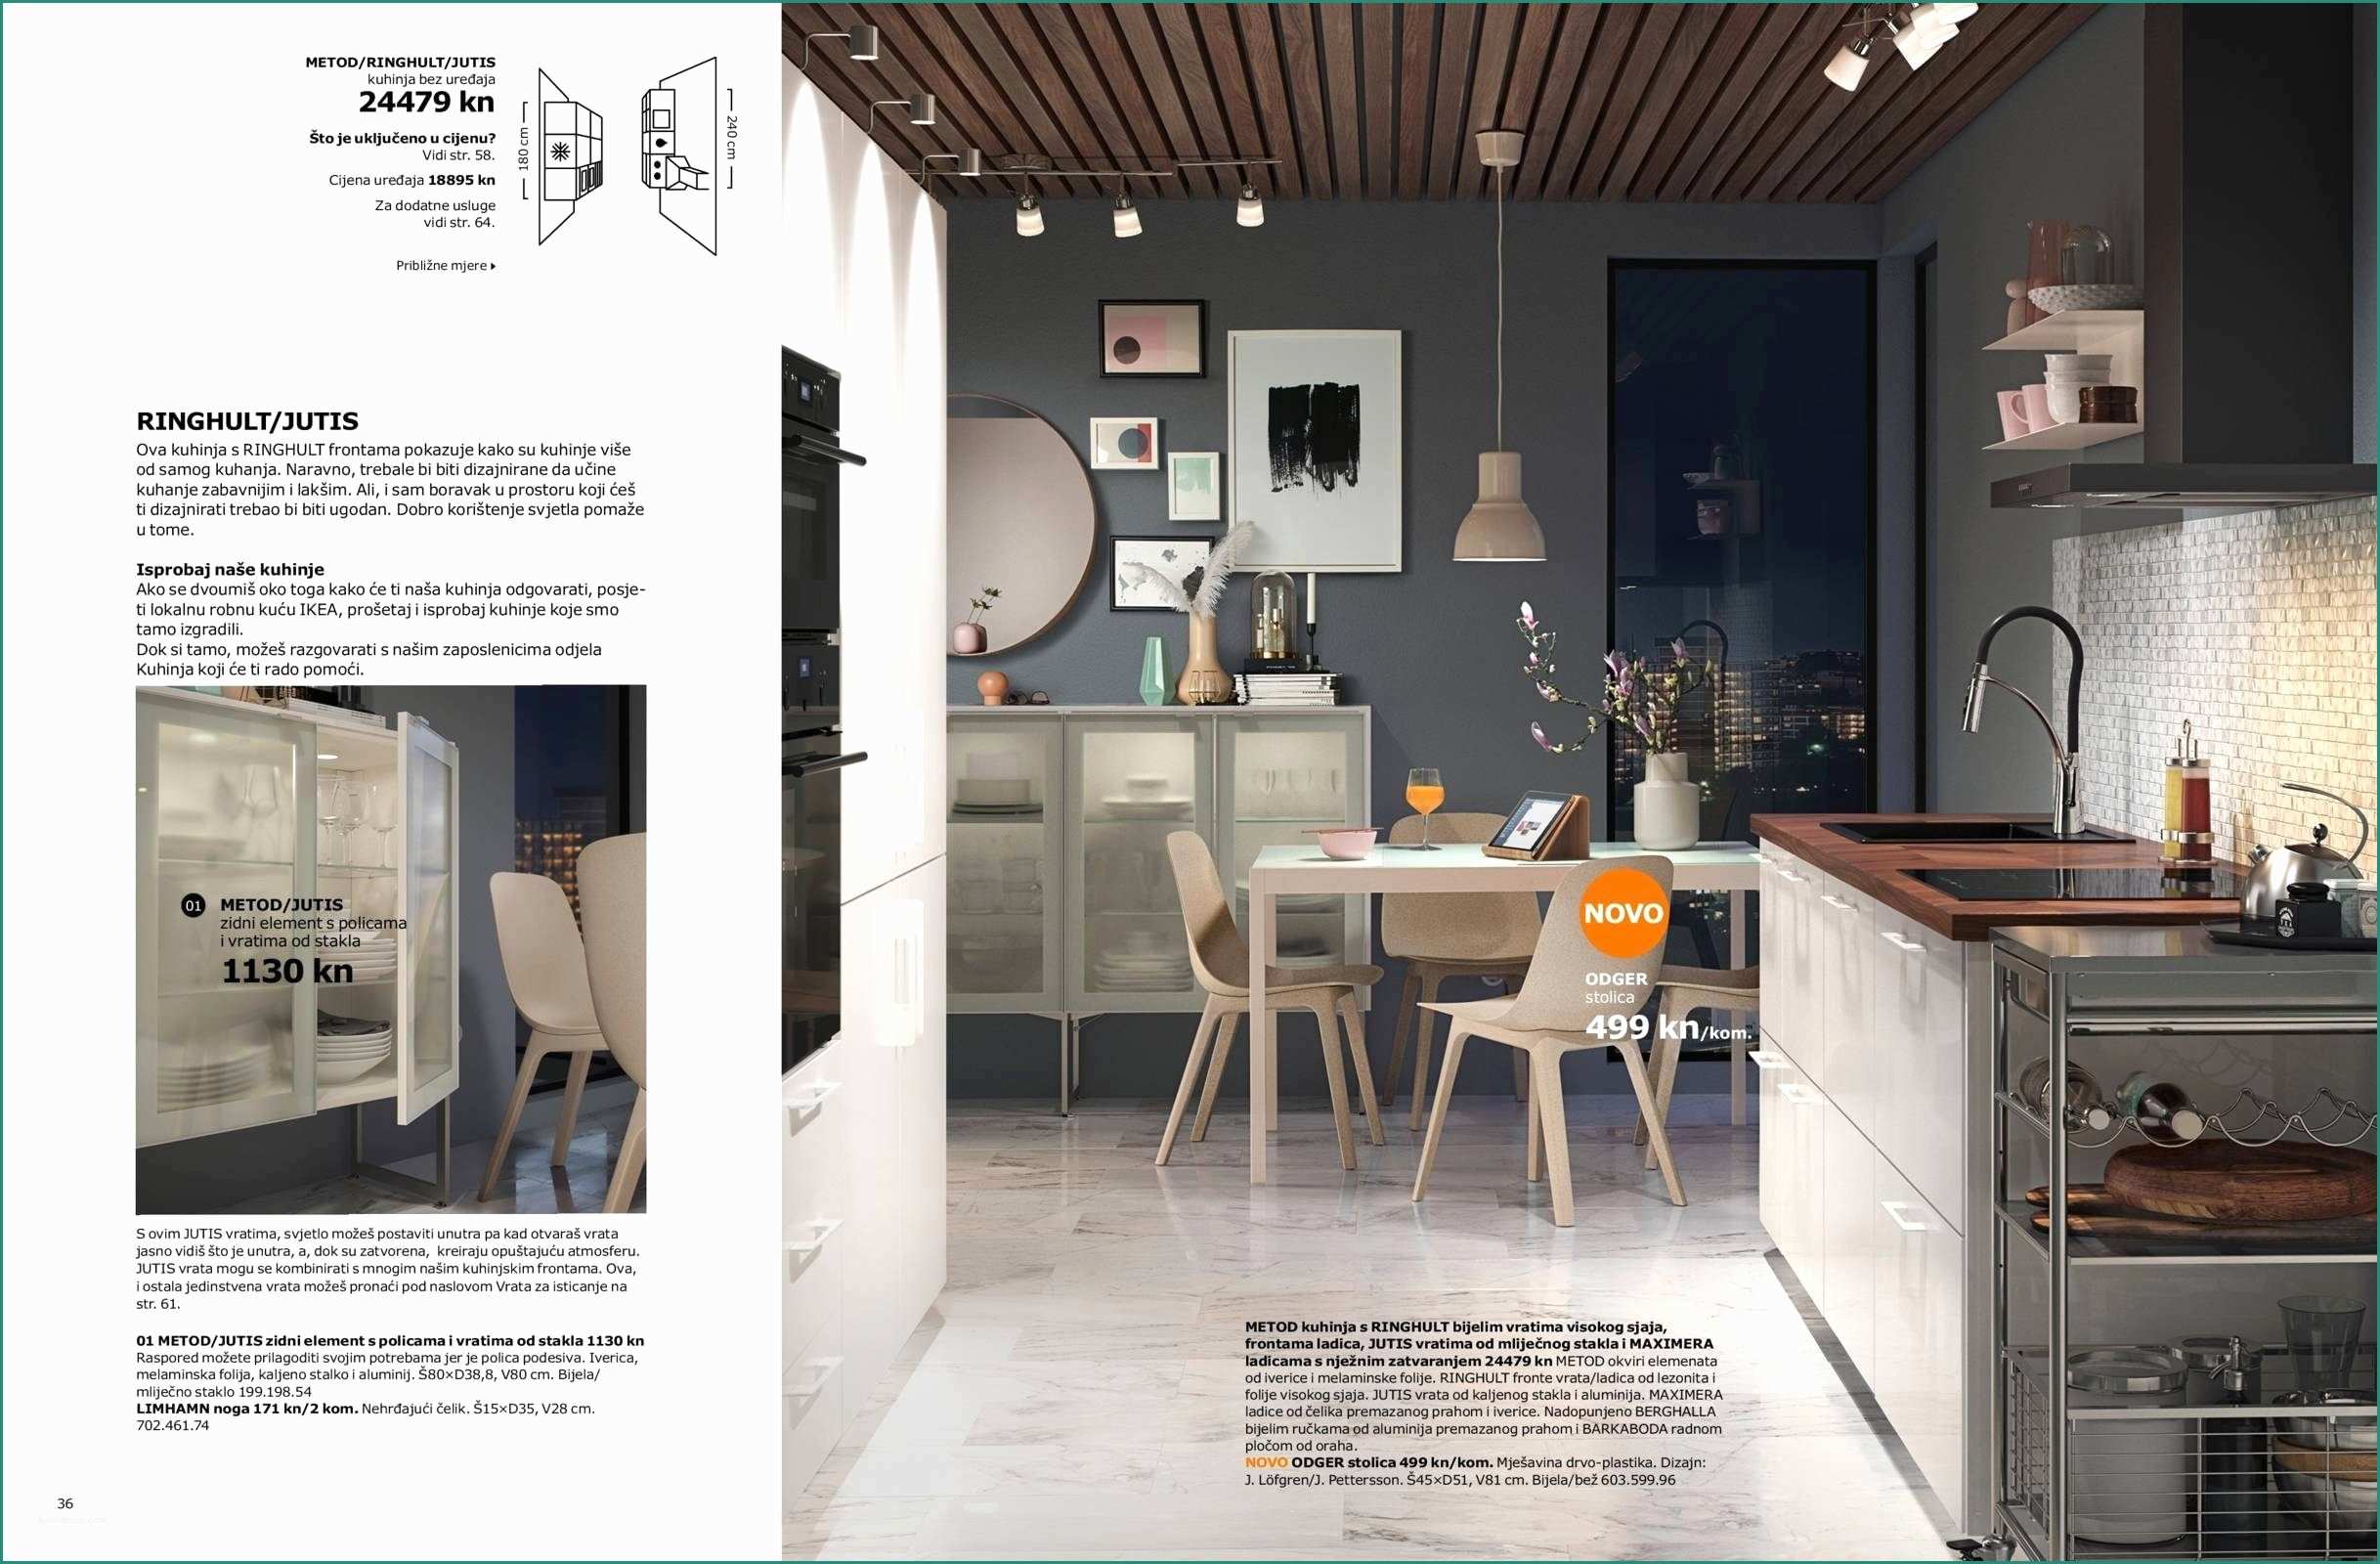 Leroy Merlin Finestre Pvc E 23 Reference Porte A Libro Ikea – Design Per La Casa